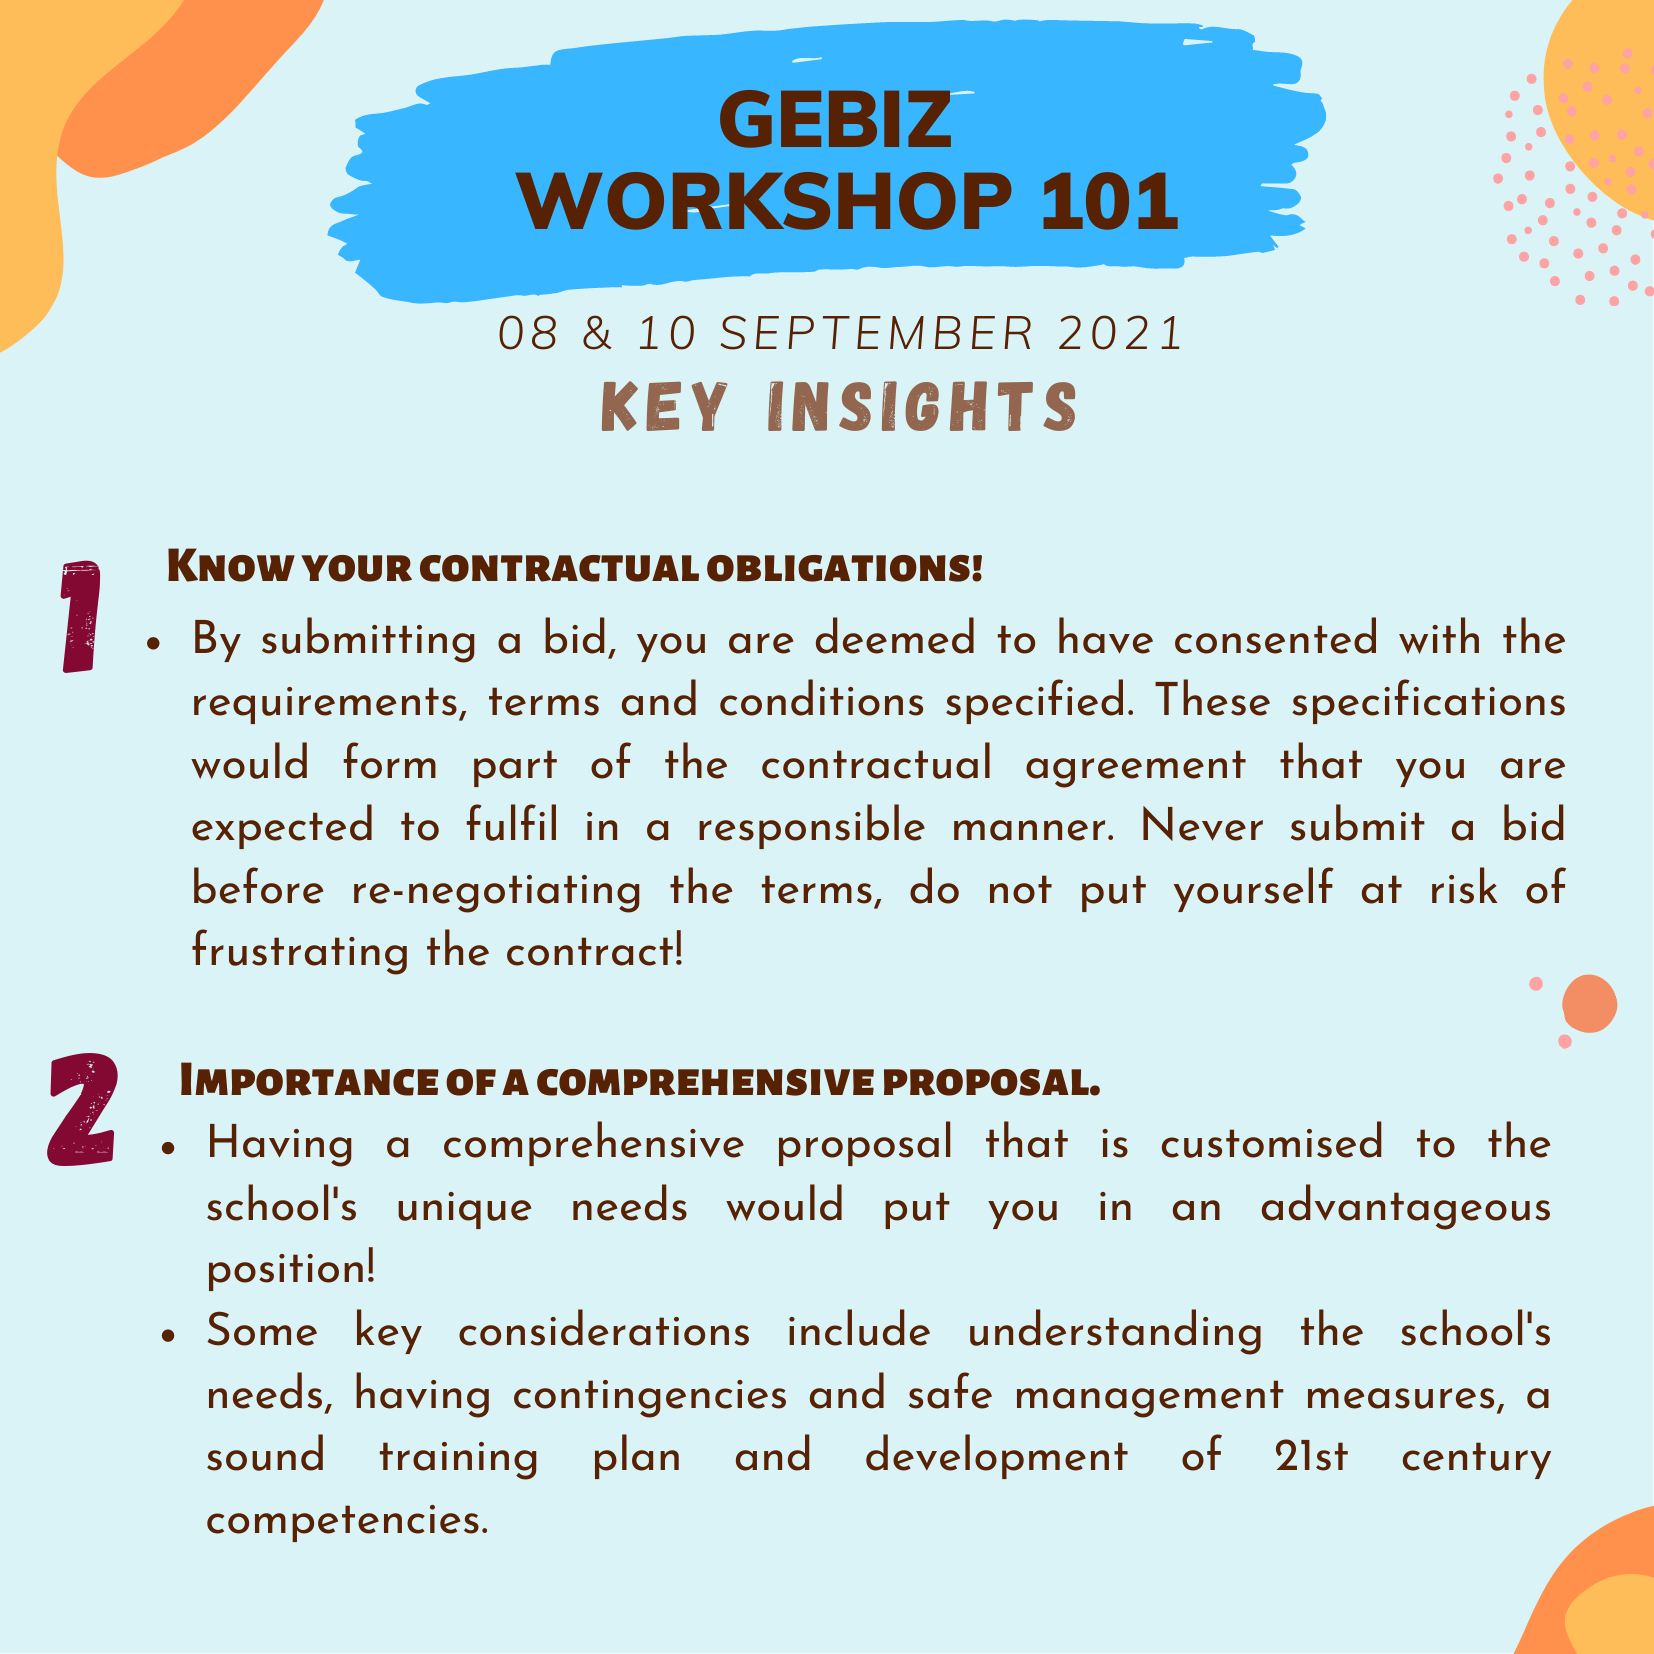 NICA GeBiz Workshop 101 - 08 & 10 September 2021